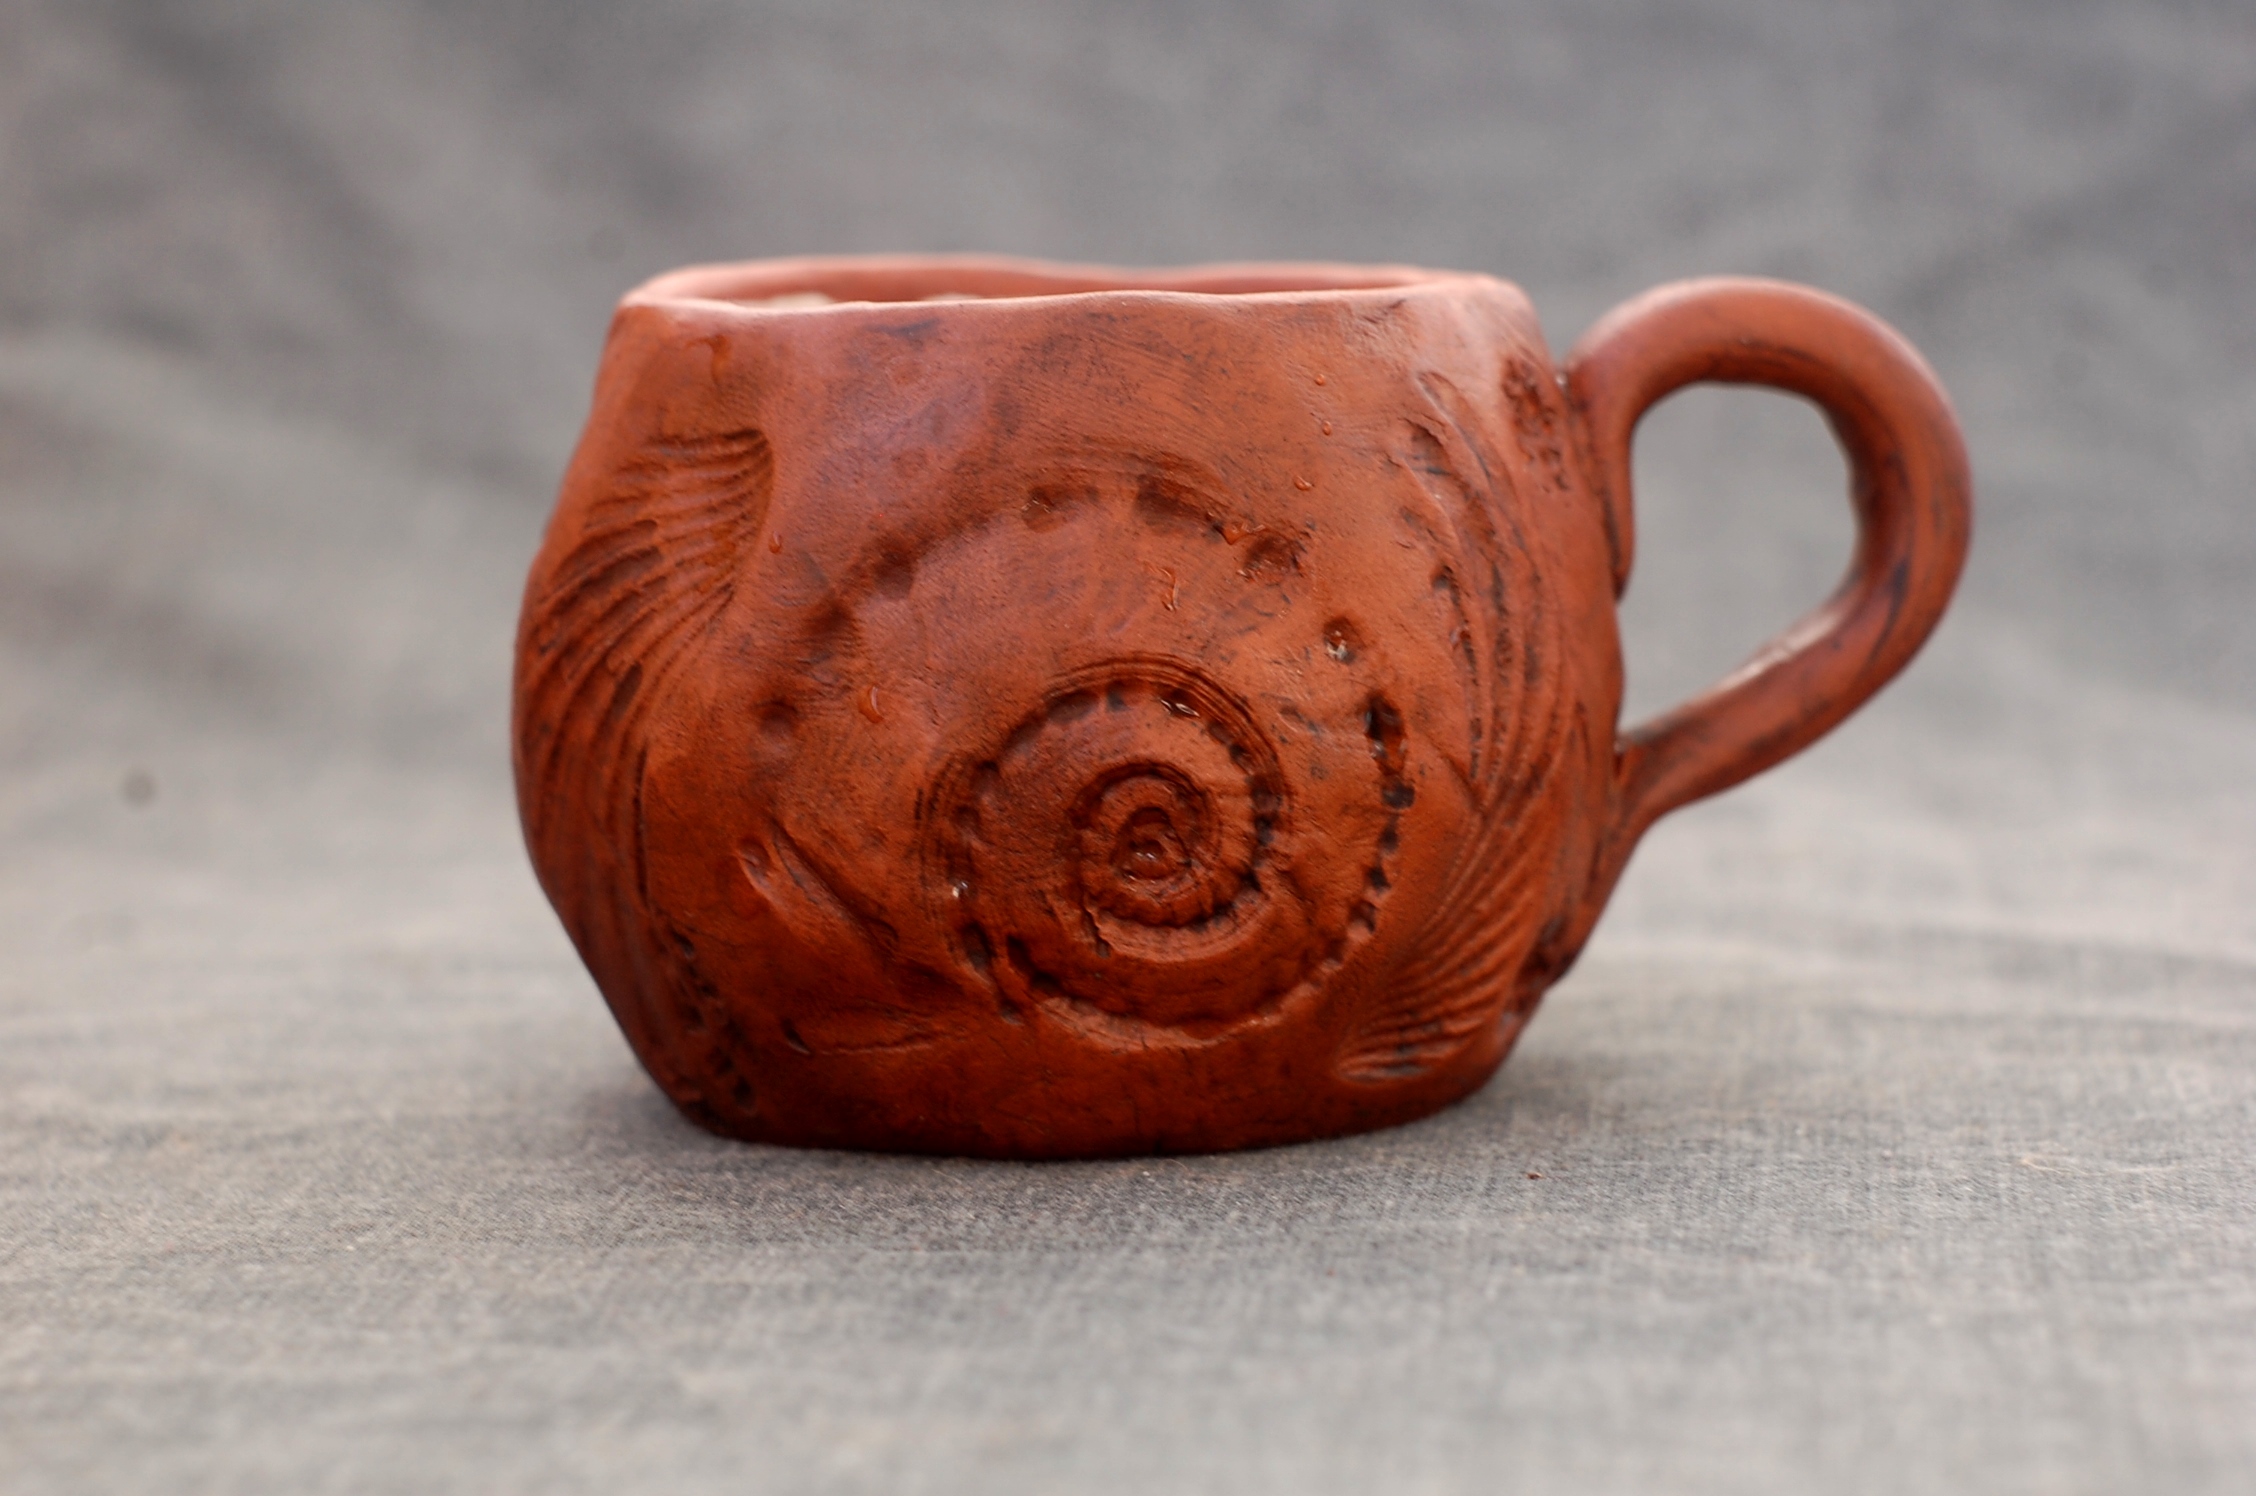 Handmade pottery mug "Sea" with handle ~9oz